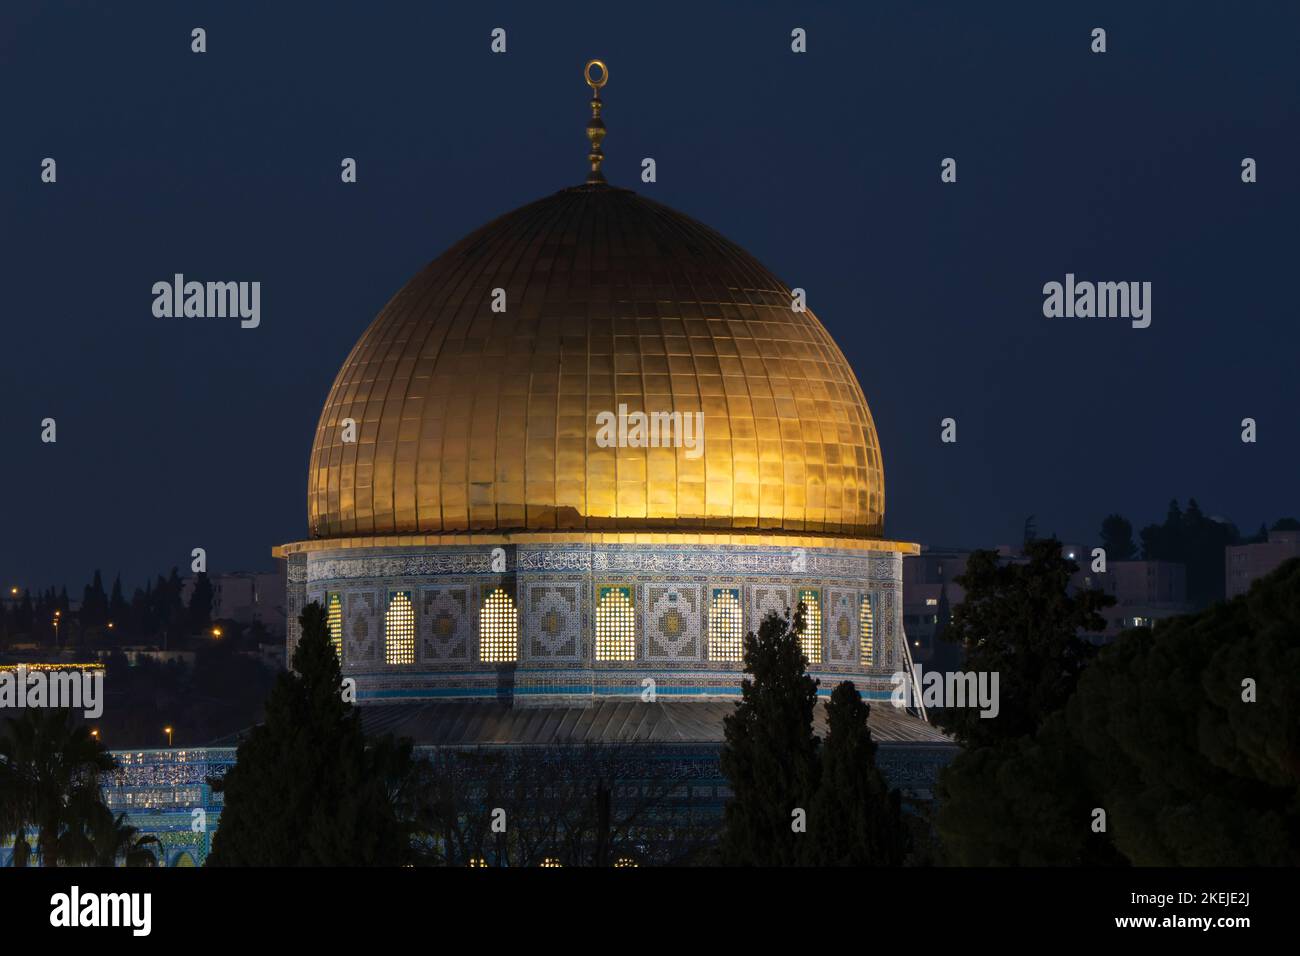 Blick in der Nacht auf den vergoldeten islamischen Schrein Dome of Der Felsen am Tempelberg, der den Muslimen bekannt ist Wie der Haram esh-Sharif in der alten Stadt Ost-Jerusalem Israel Stockfoto